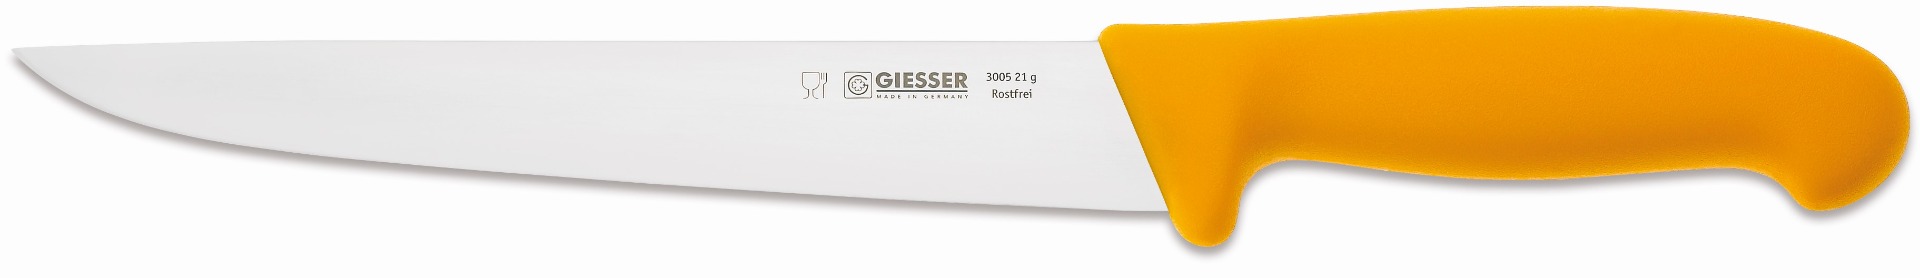 Giesser Stechmesser 21 cm